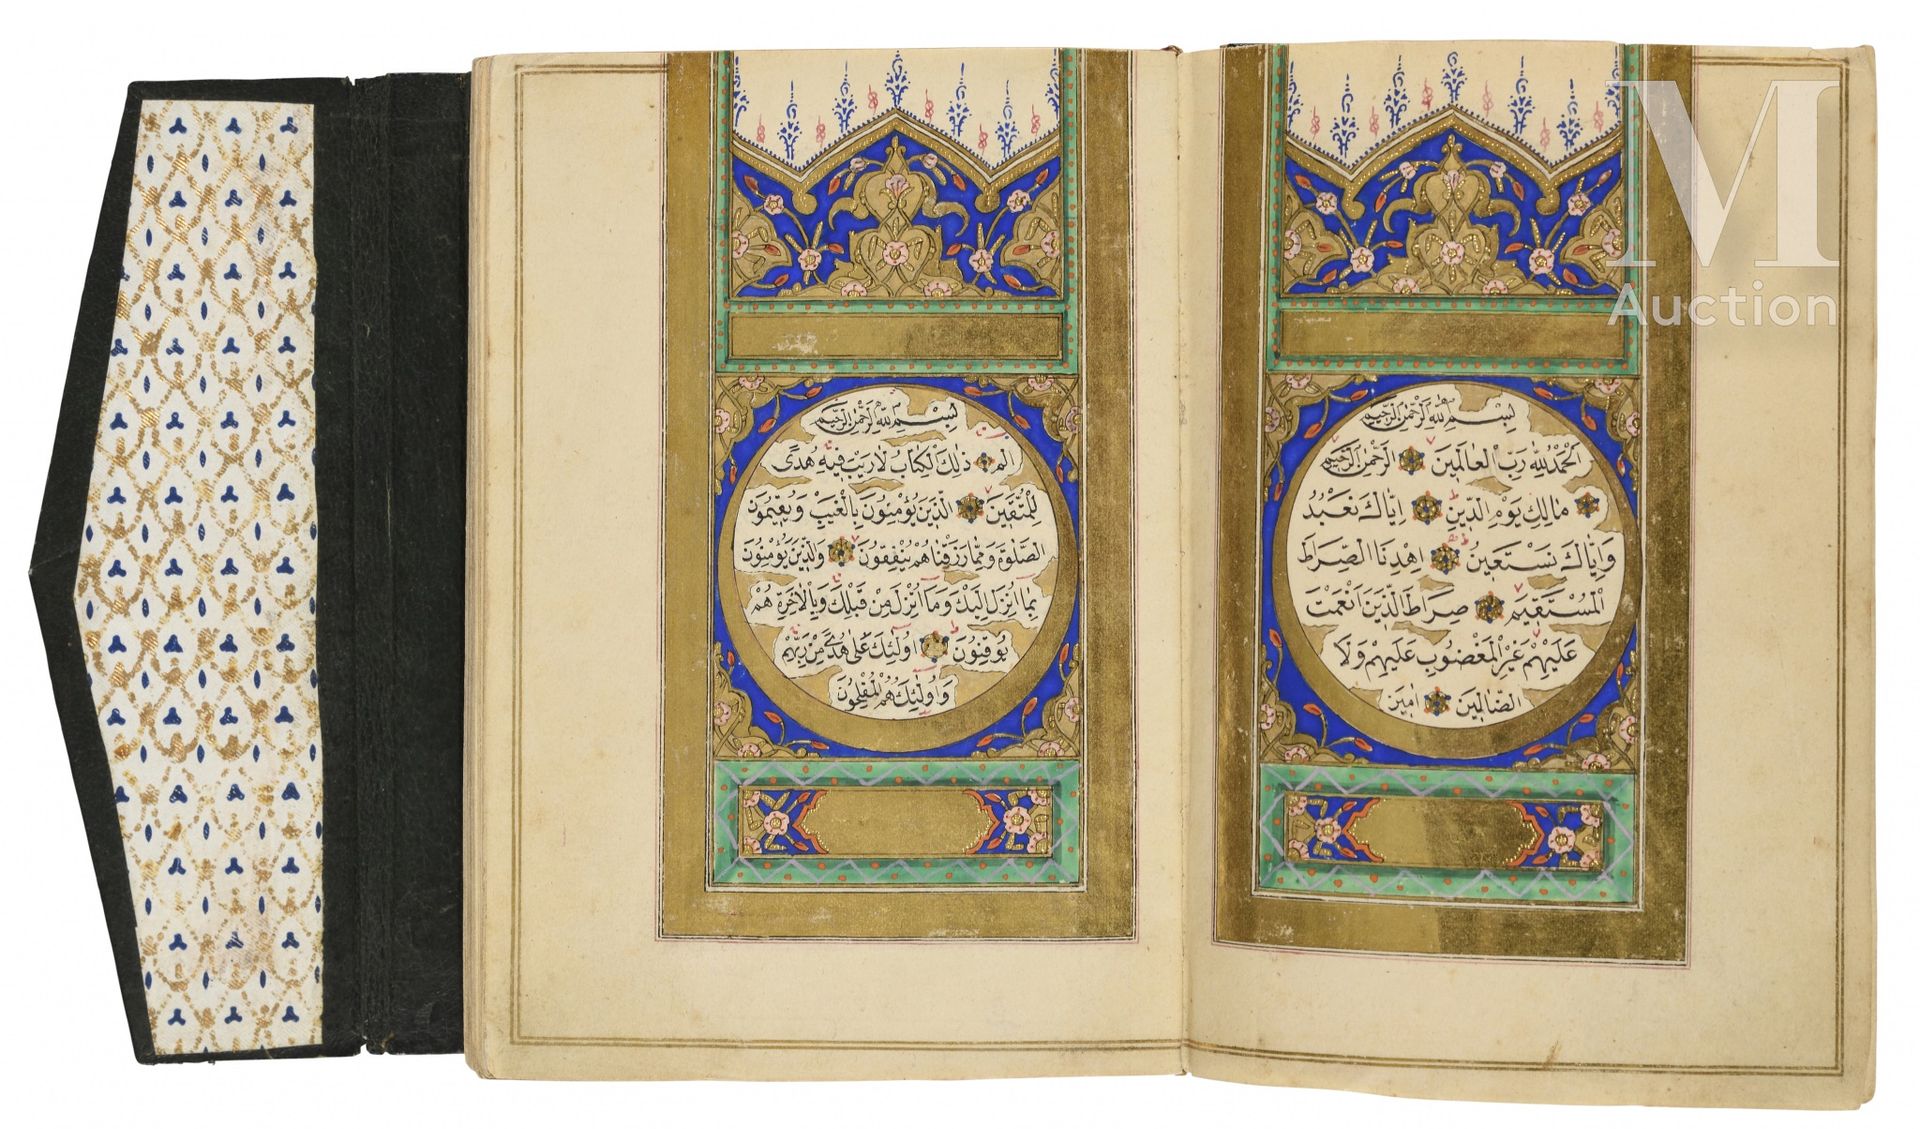 Coran d'époque ottomane Da 'Ali Al-Khulusi

Turchia, datato 1279H. ('''=1862) 

&hellip;